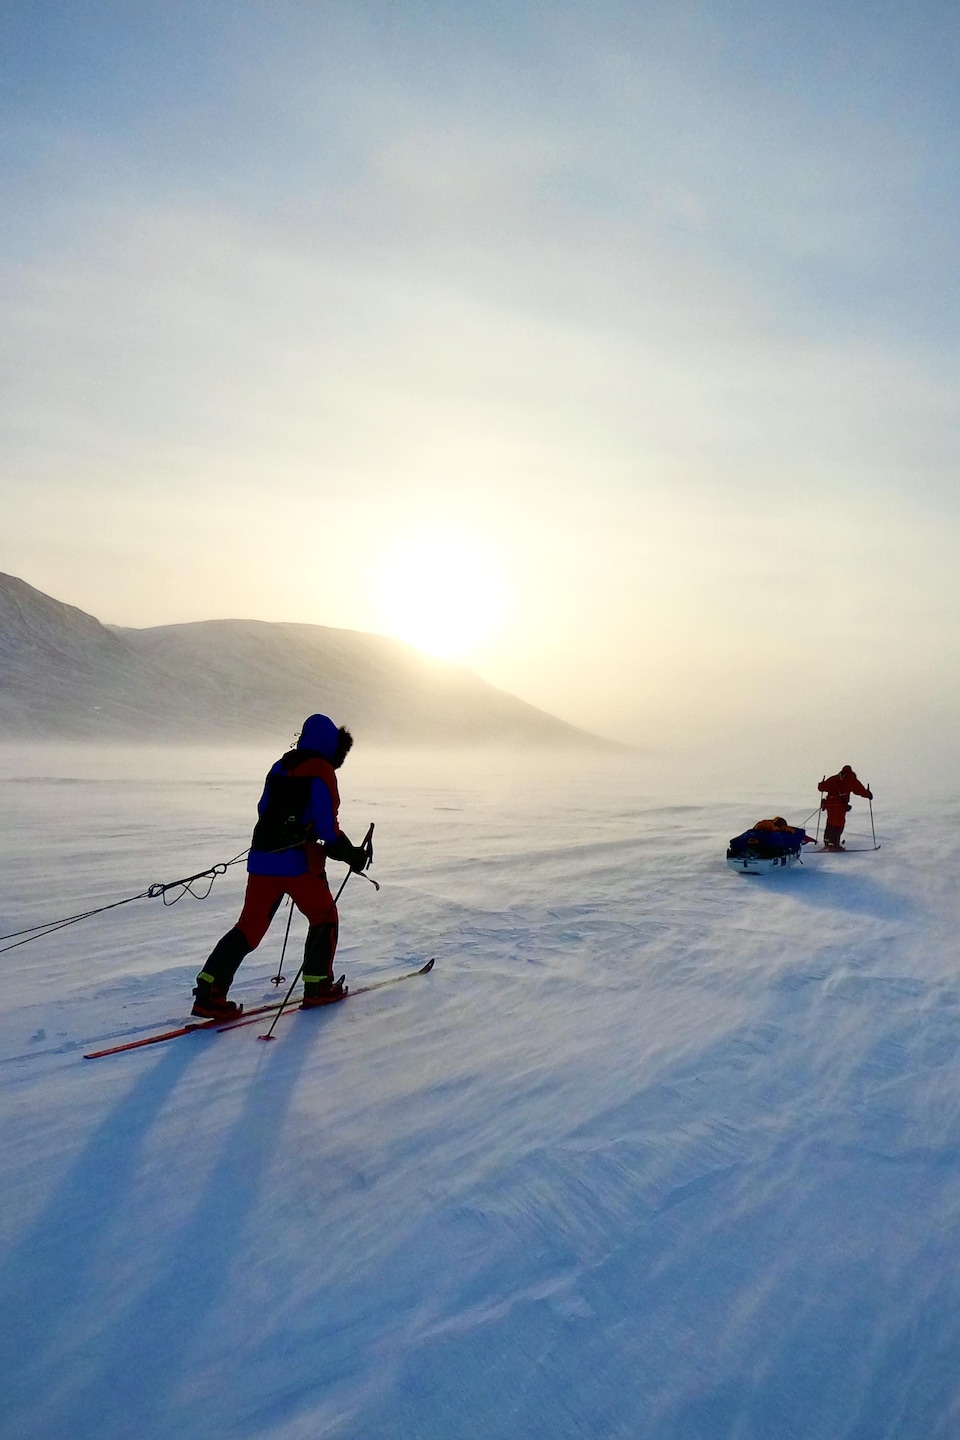 Deux hommes, habillés en épais vêtements d'hiver, skis en traînant un traîneau derrière eux.  Le climat semble froid et aride, alors que la poudrerie souffle sur la neige.